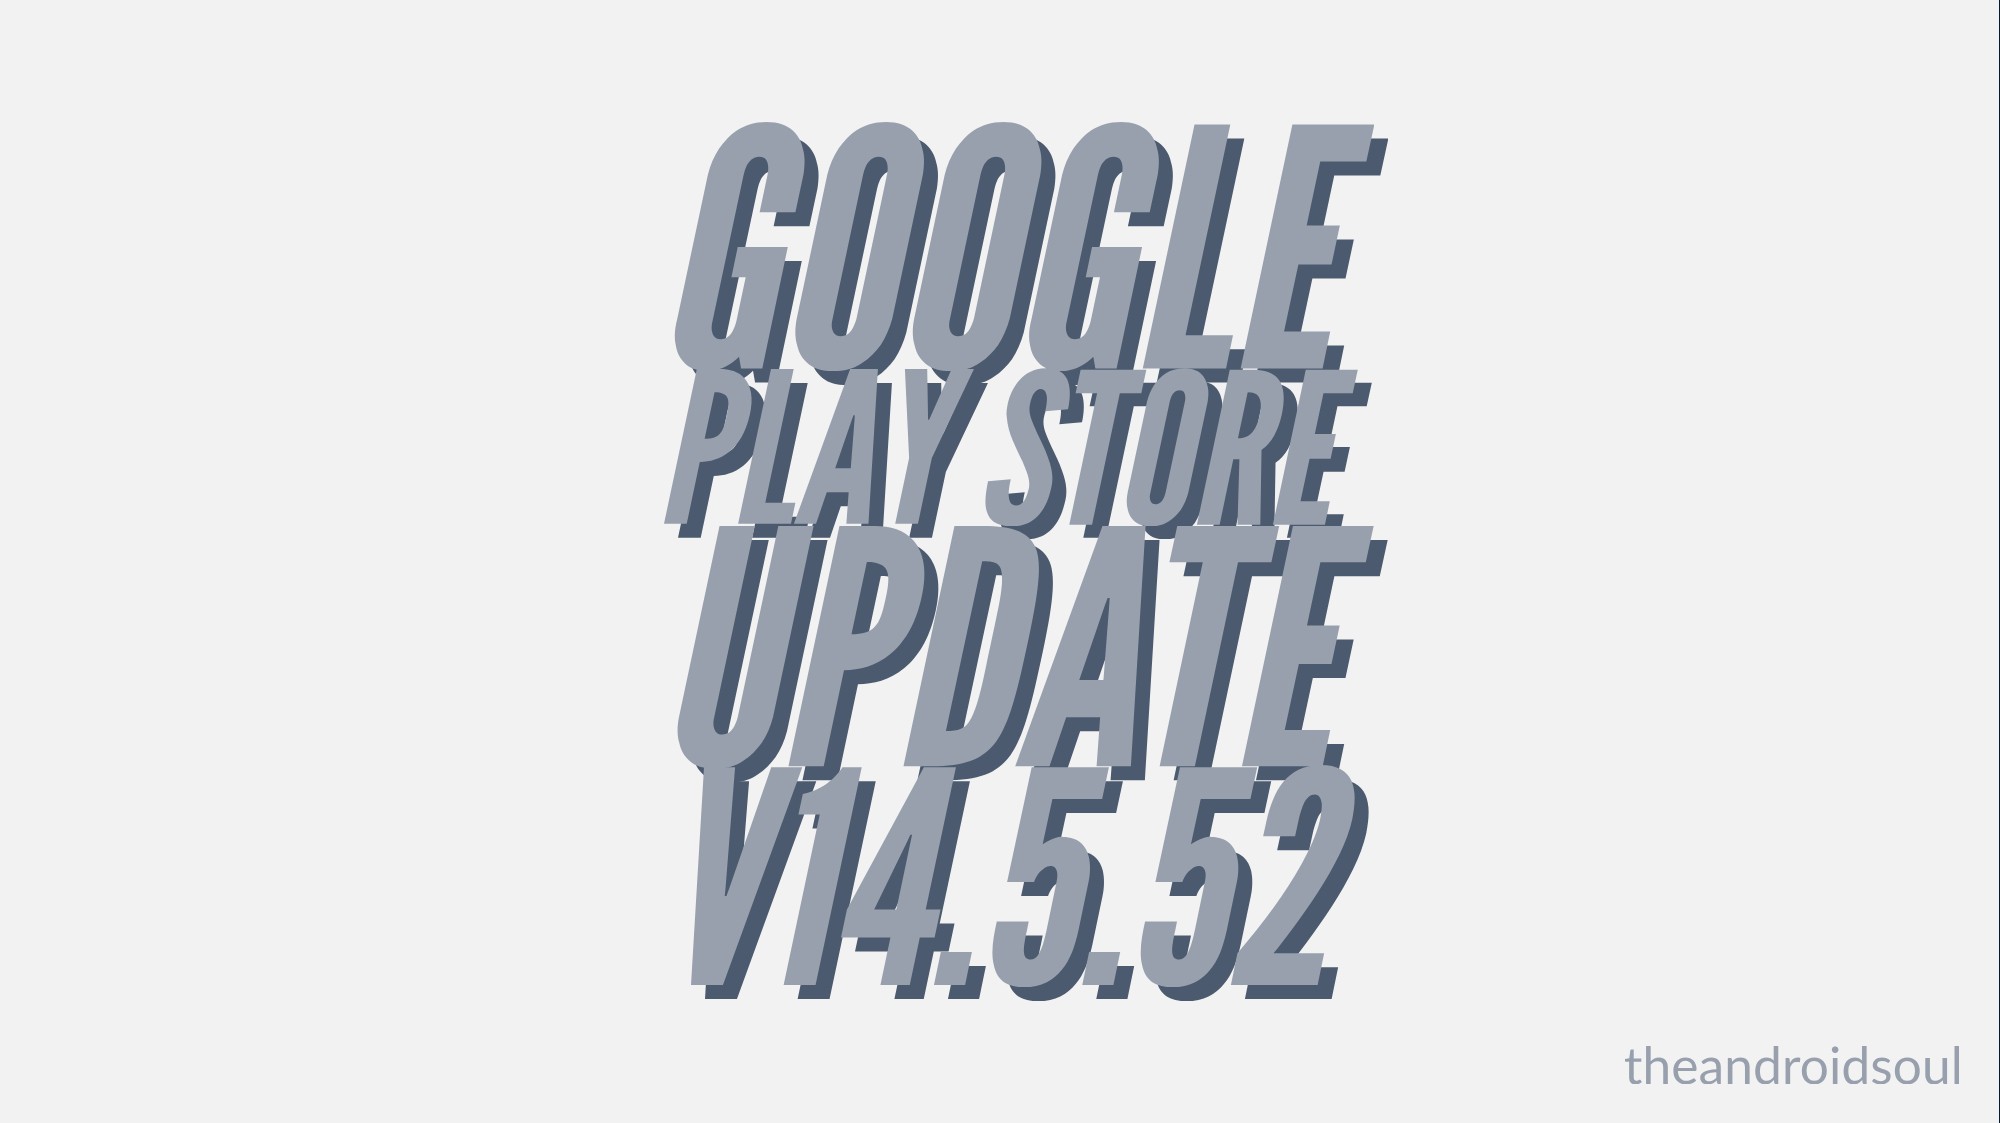 La actualización de Google Play Store v14.5.52 trae el rediseño de Material Theme y soporte para paquetes APEX también